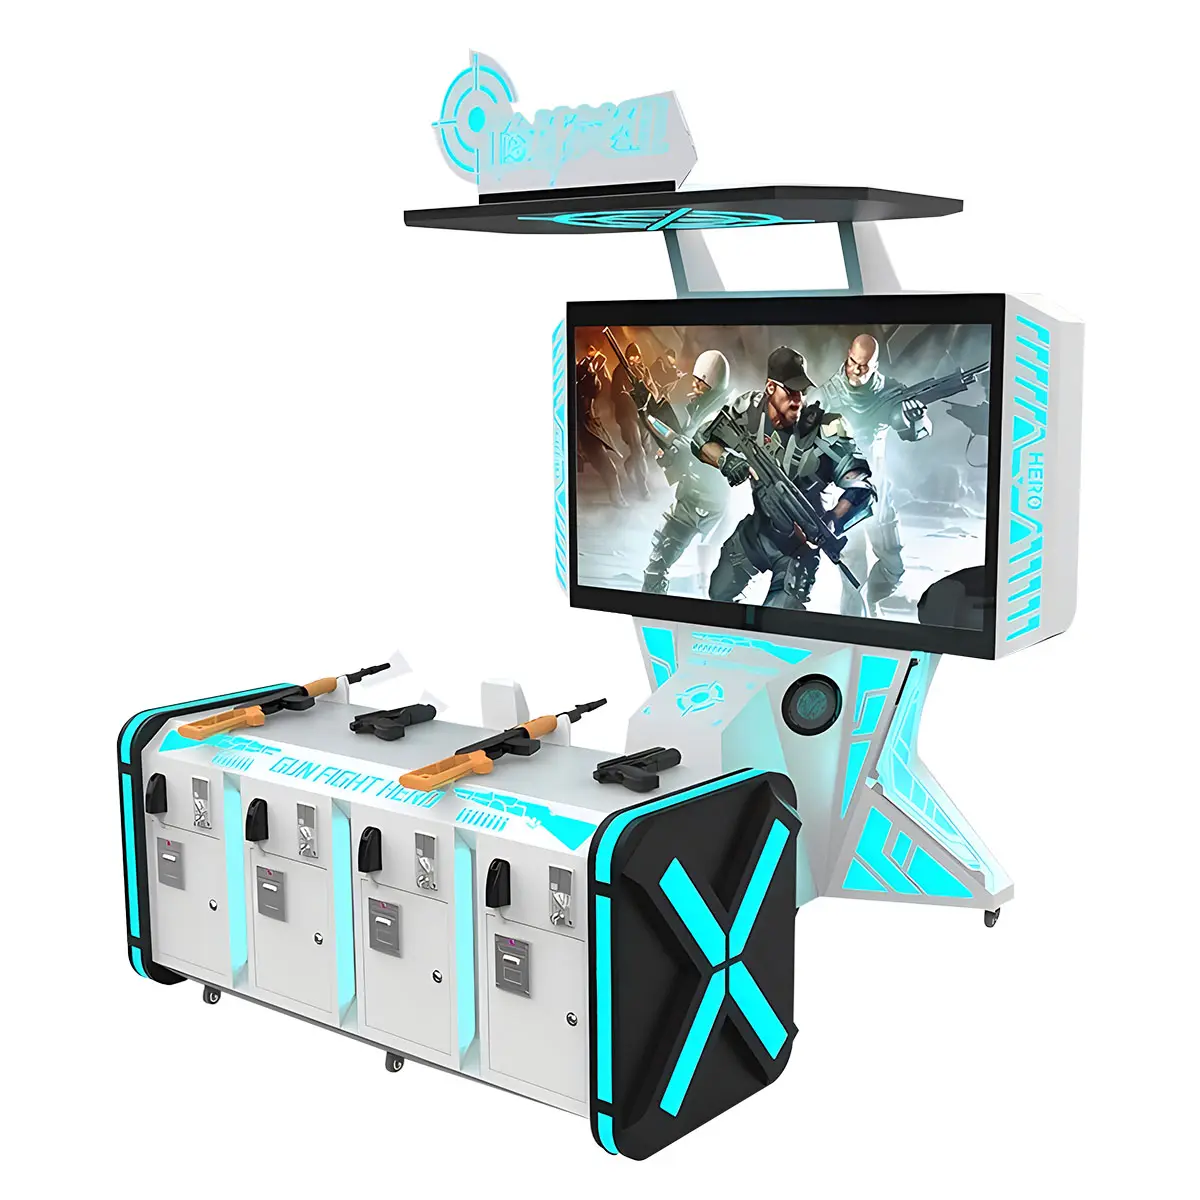 Săn Bắn heros thực tế ảo VR Arcade Máy Súng Trò chơi bắn súng trò chơi lớn Hunter trò chơi Arcade để bán